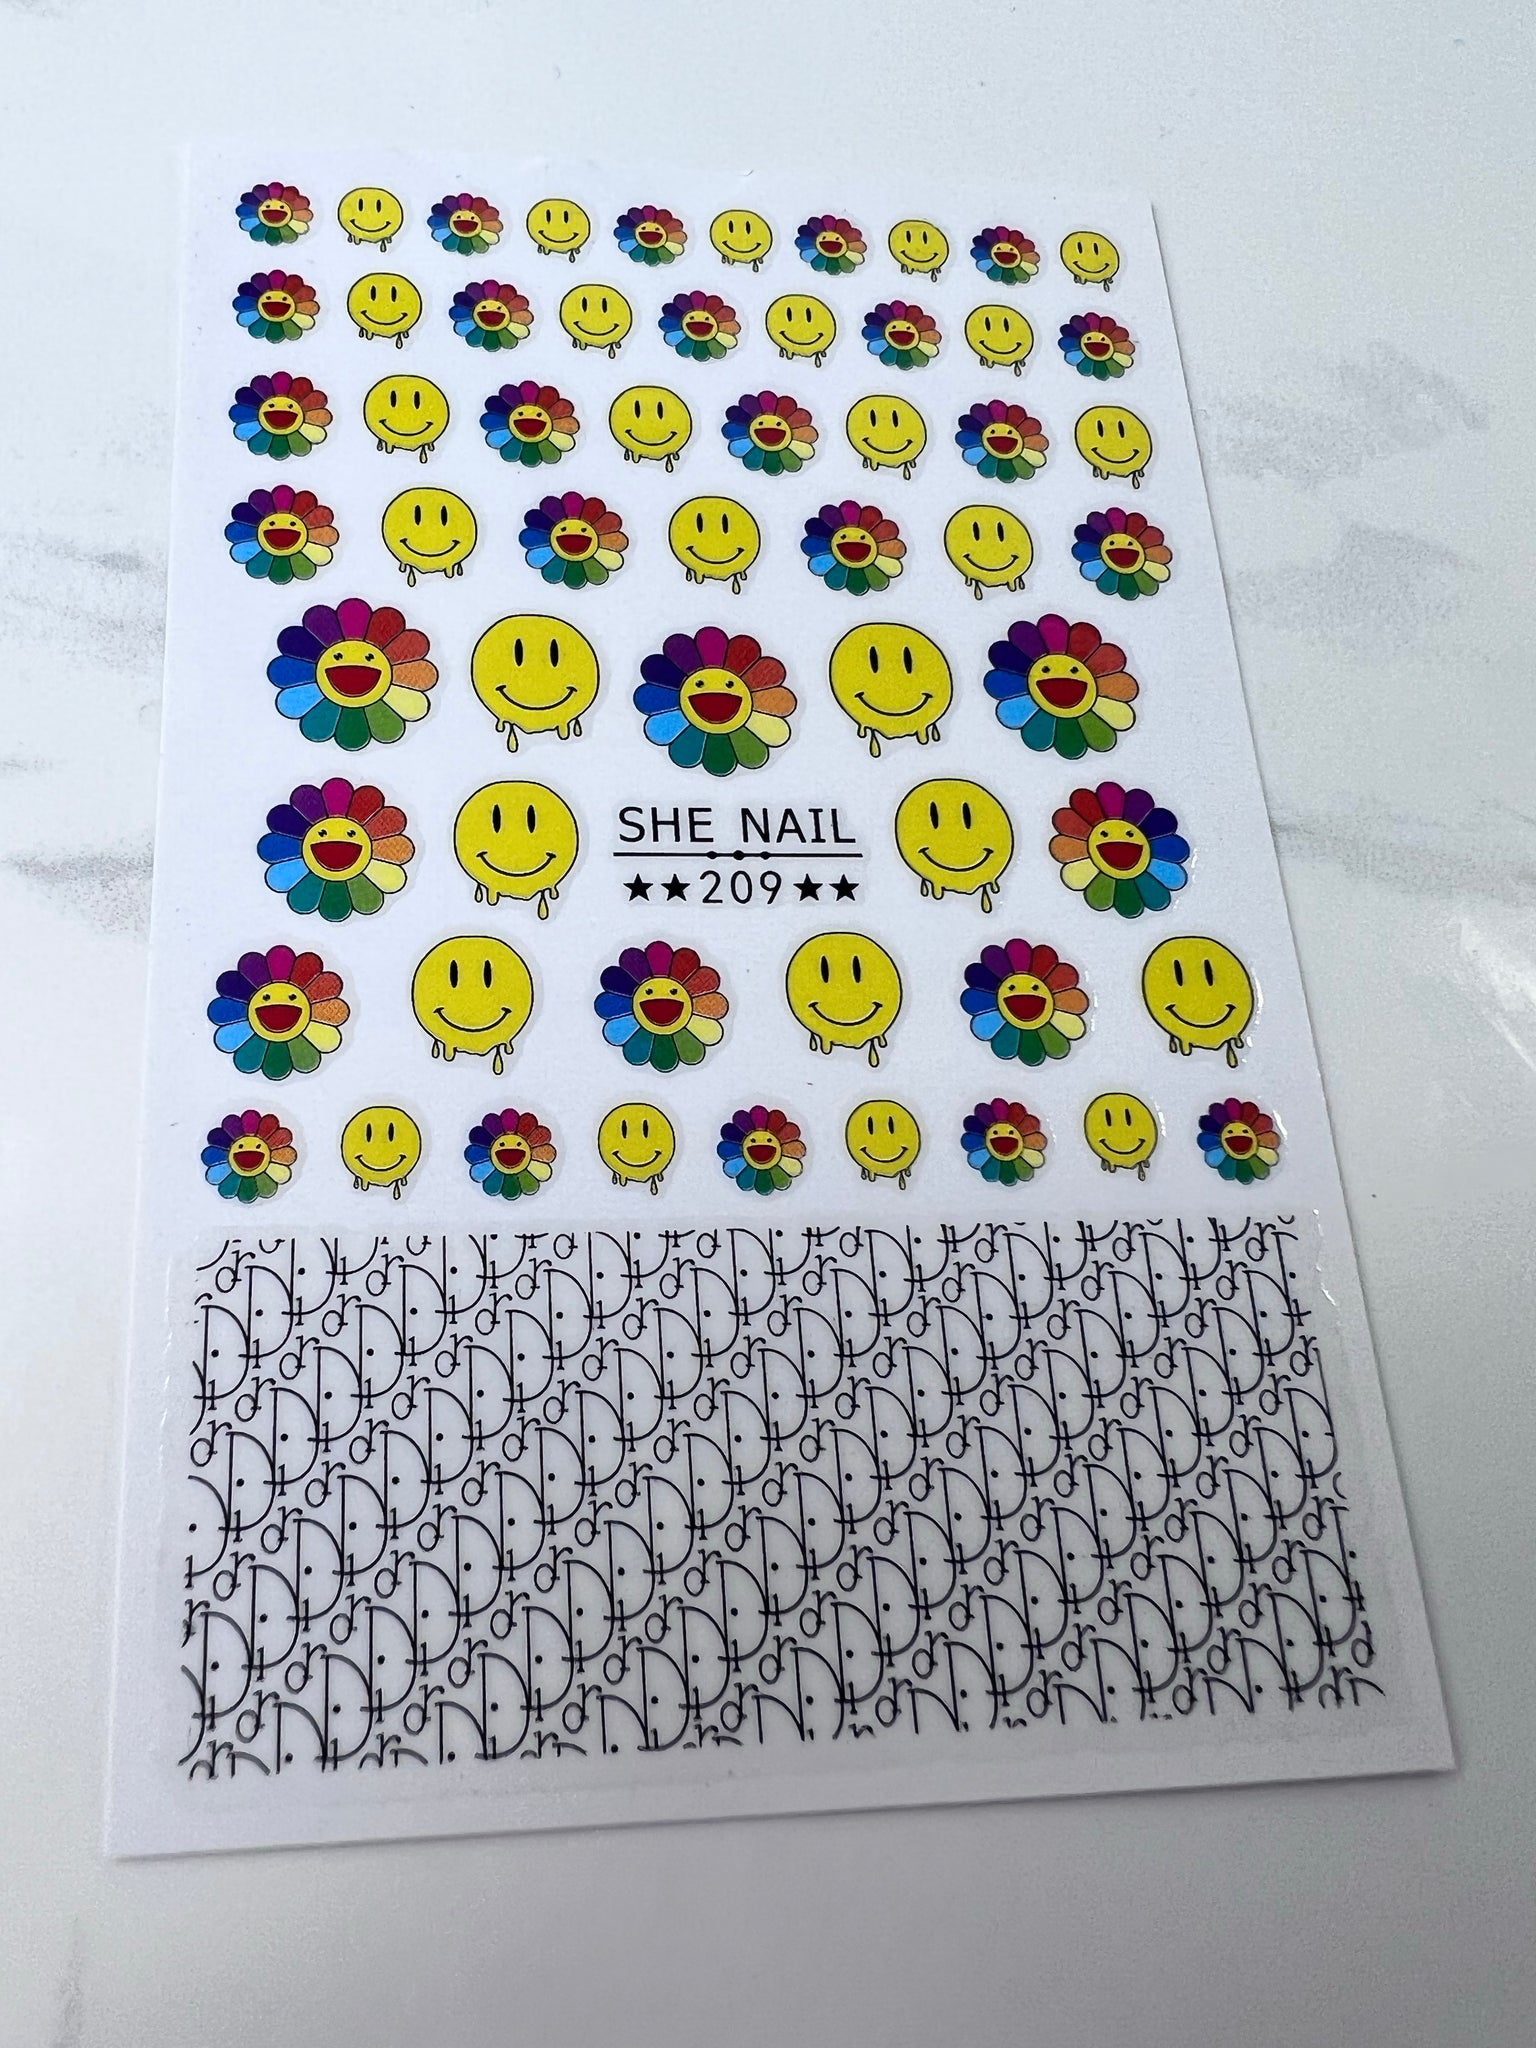 Emoji Nail Stickers